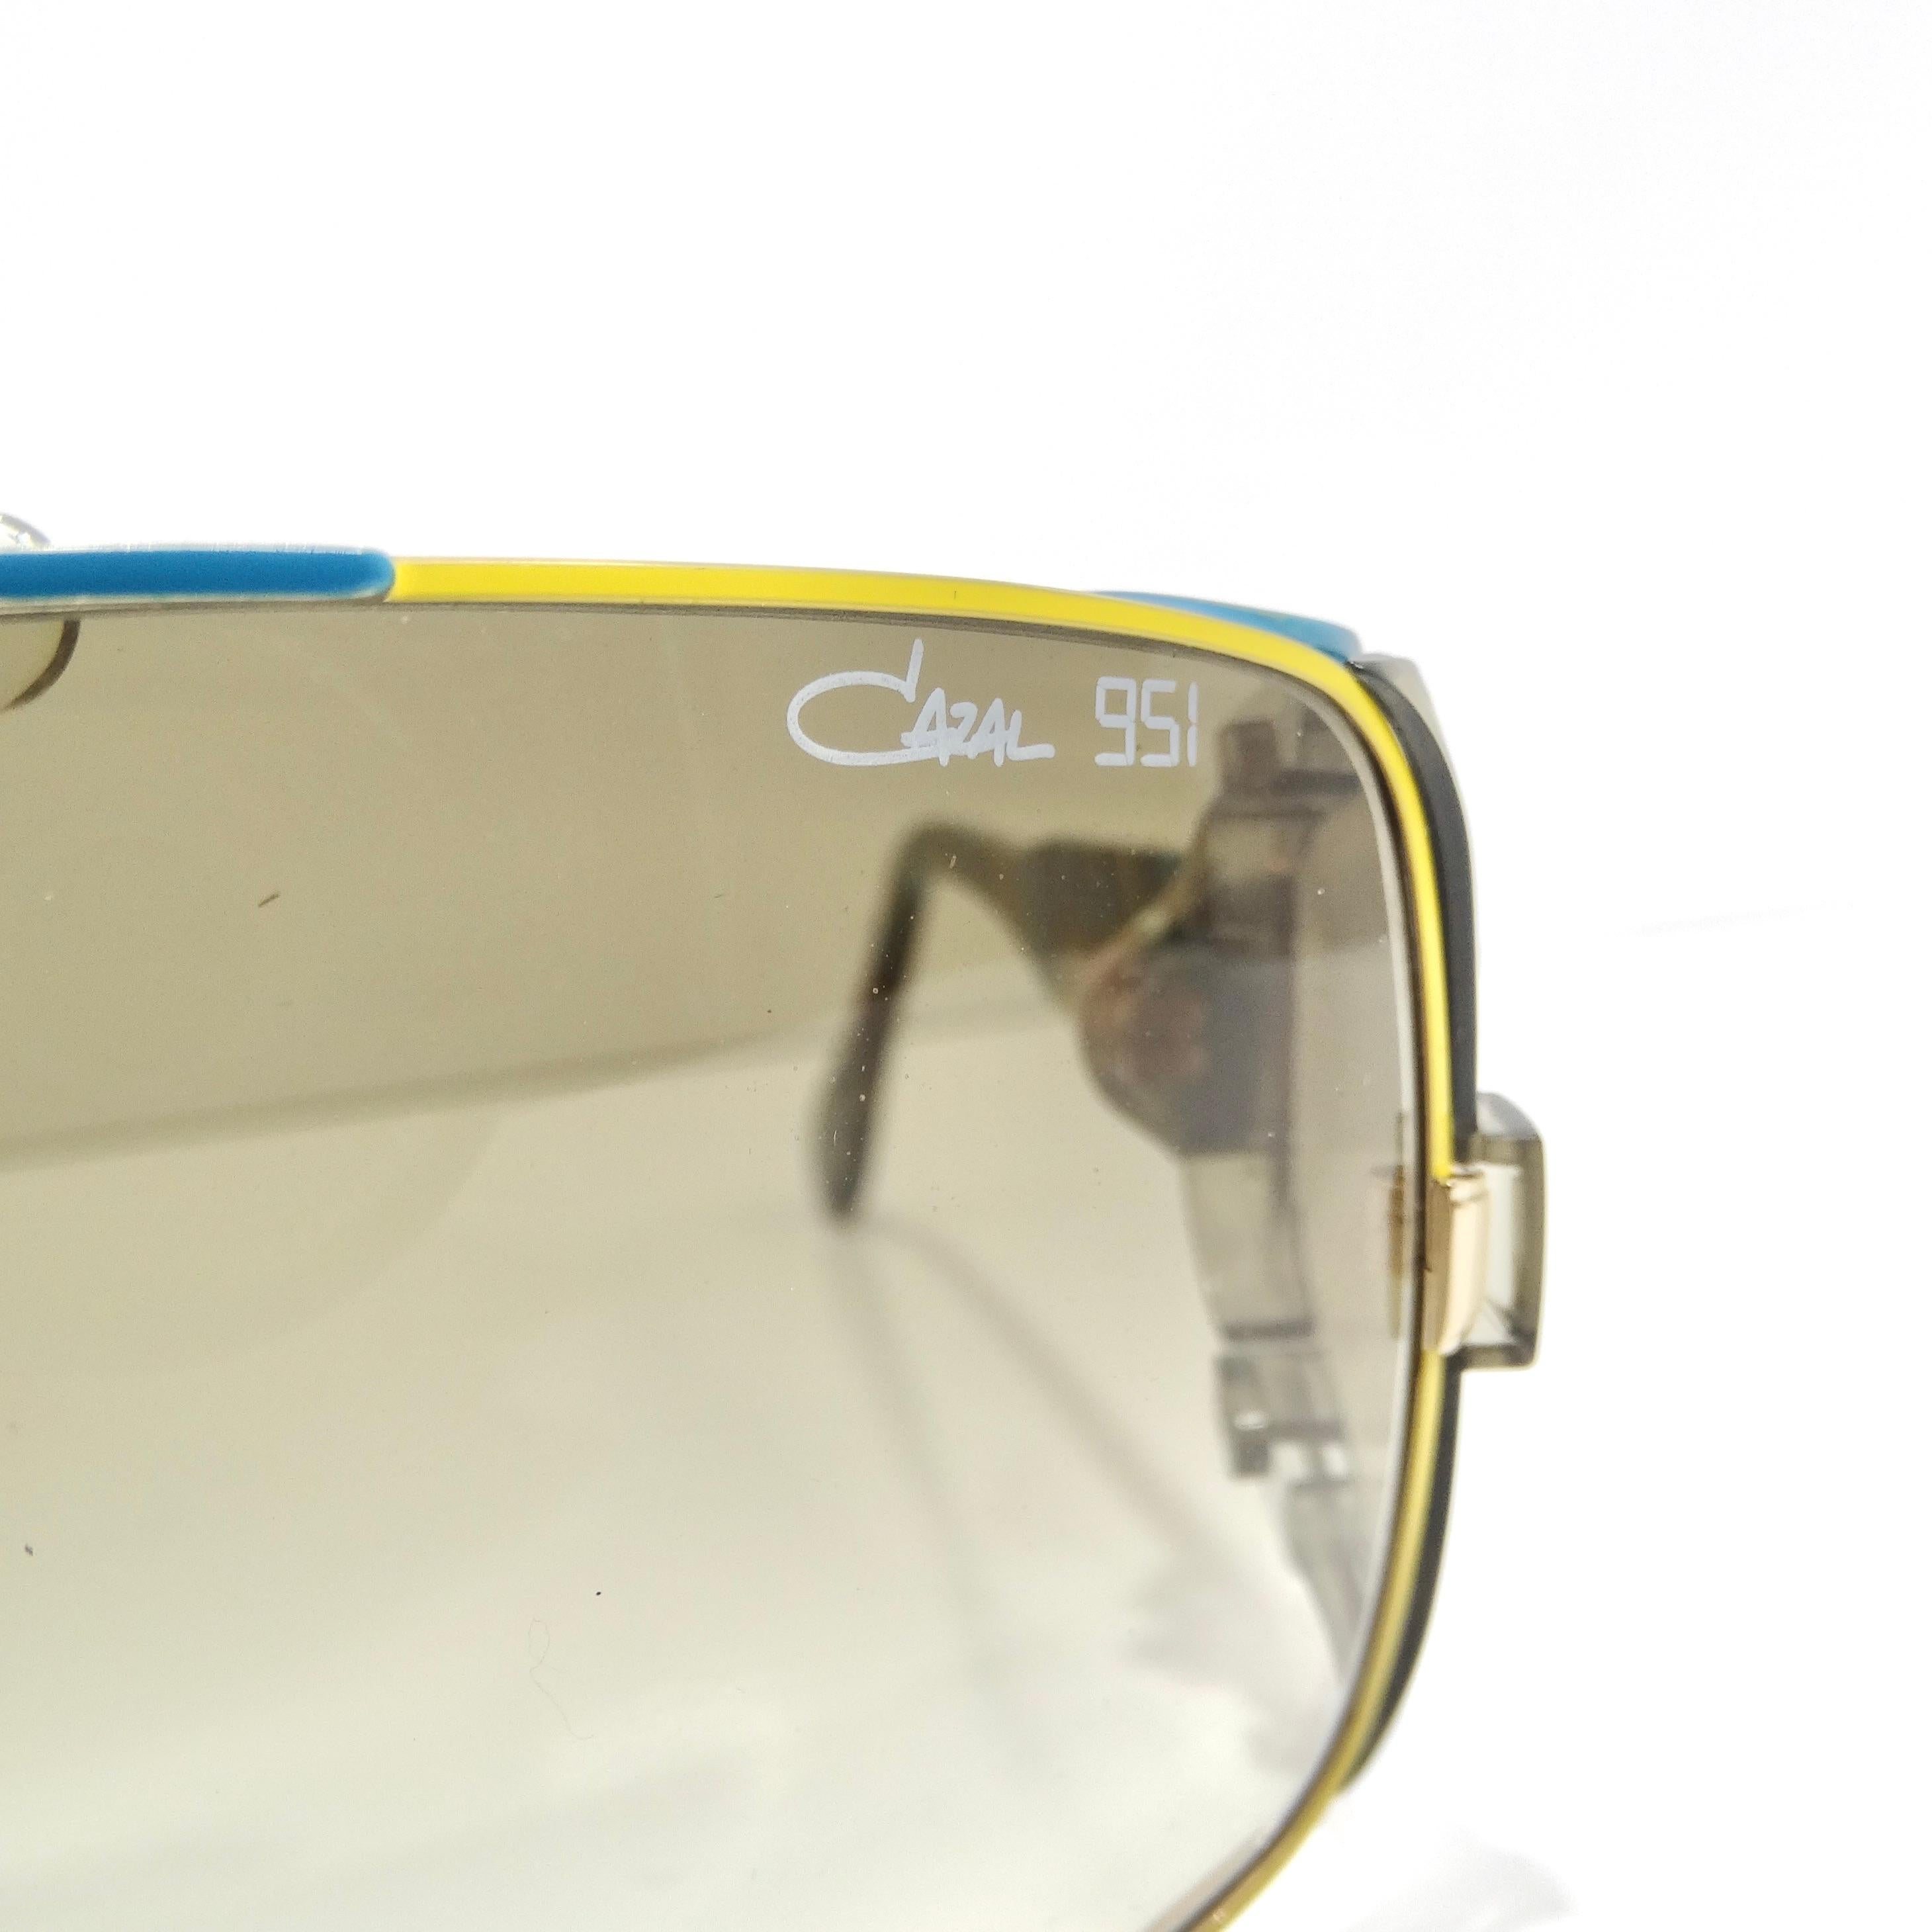 Voici les lunettes de soleil Cazal 951 Limited Edition, un ajout saisissant et super unique à votre collection de lunettes. Ces lunettes de soleil sont fabriquées avec une attention méticuleuse aux détails, avec des verres rectangulaires ornés de